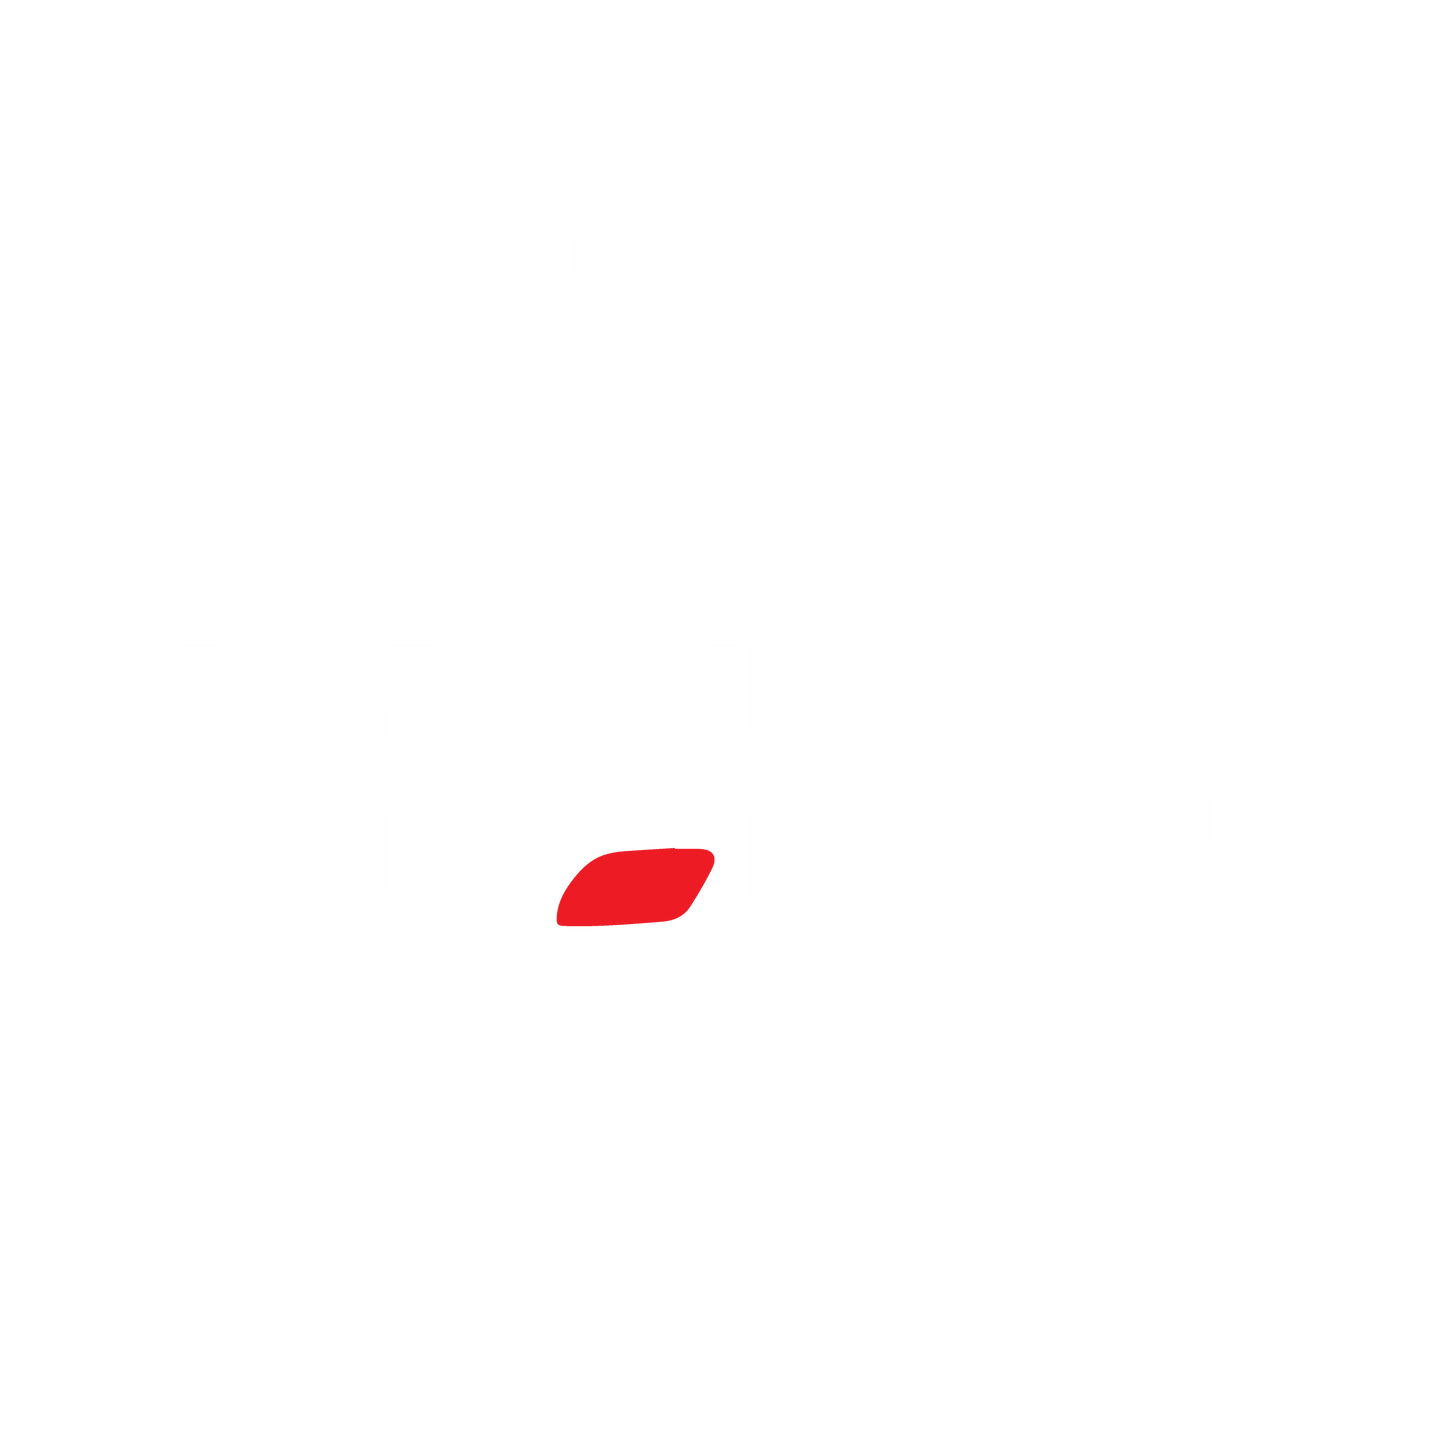 Sinkin and Drinkin T Shirt